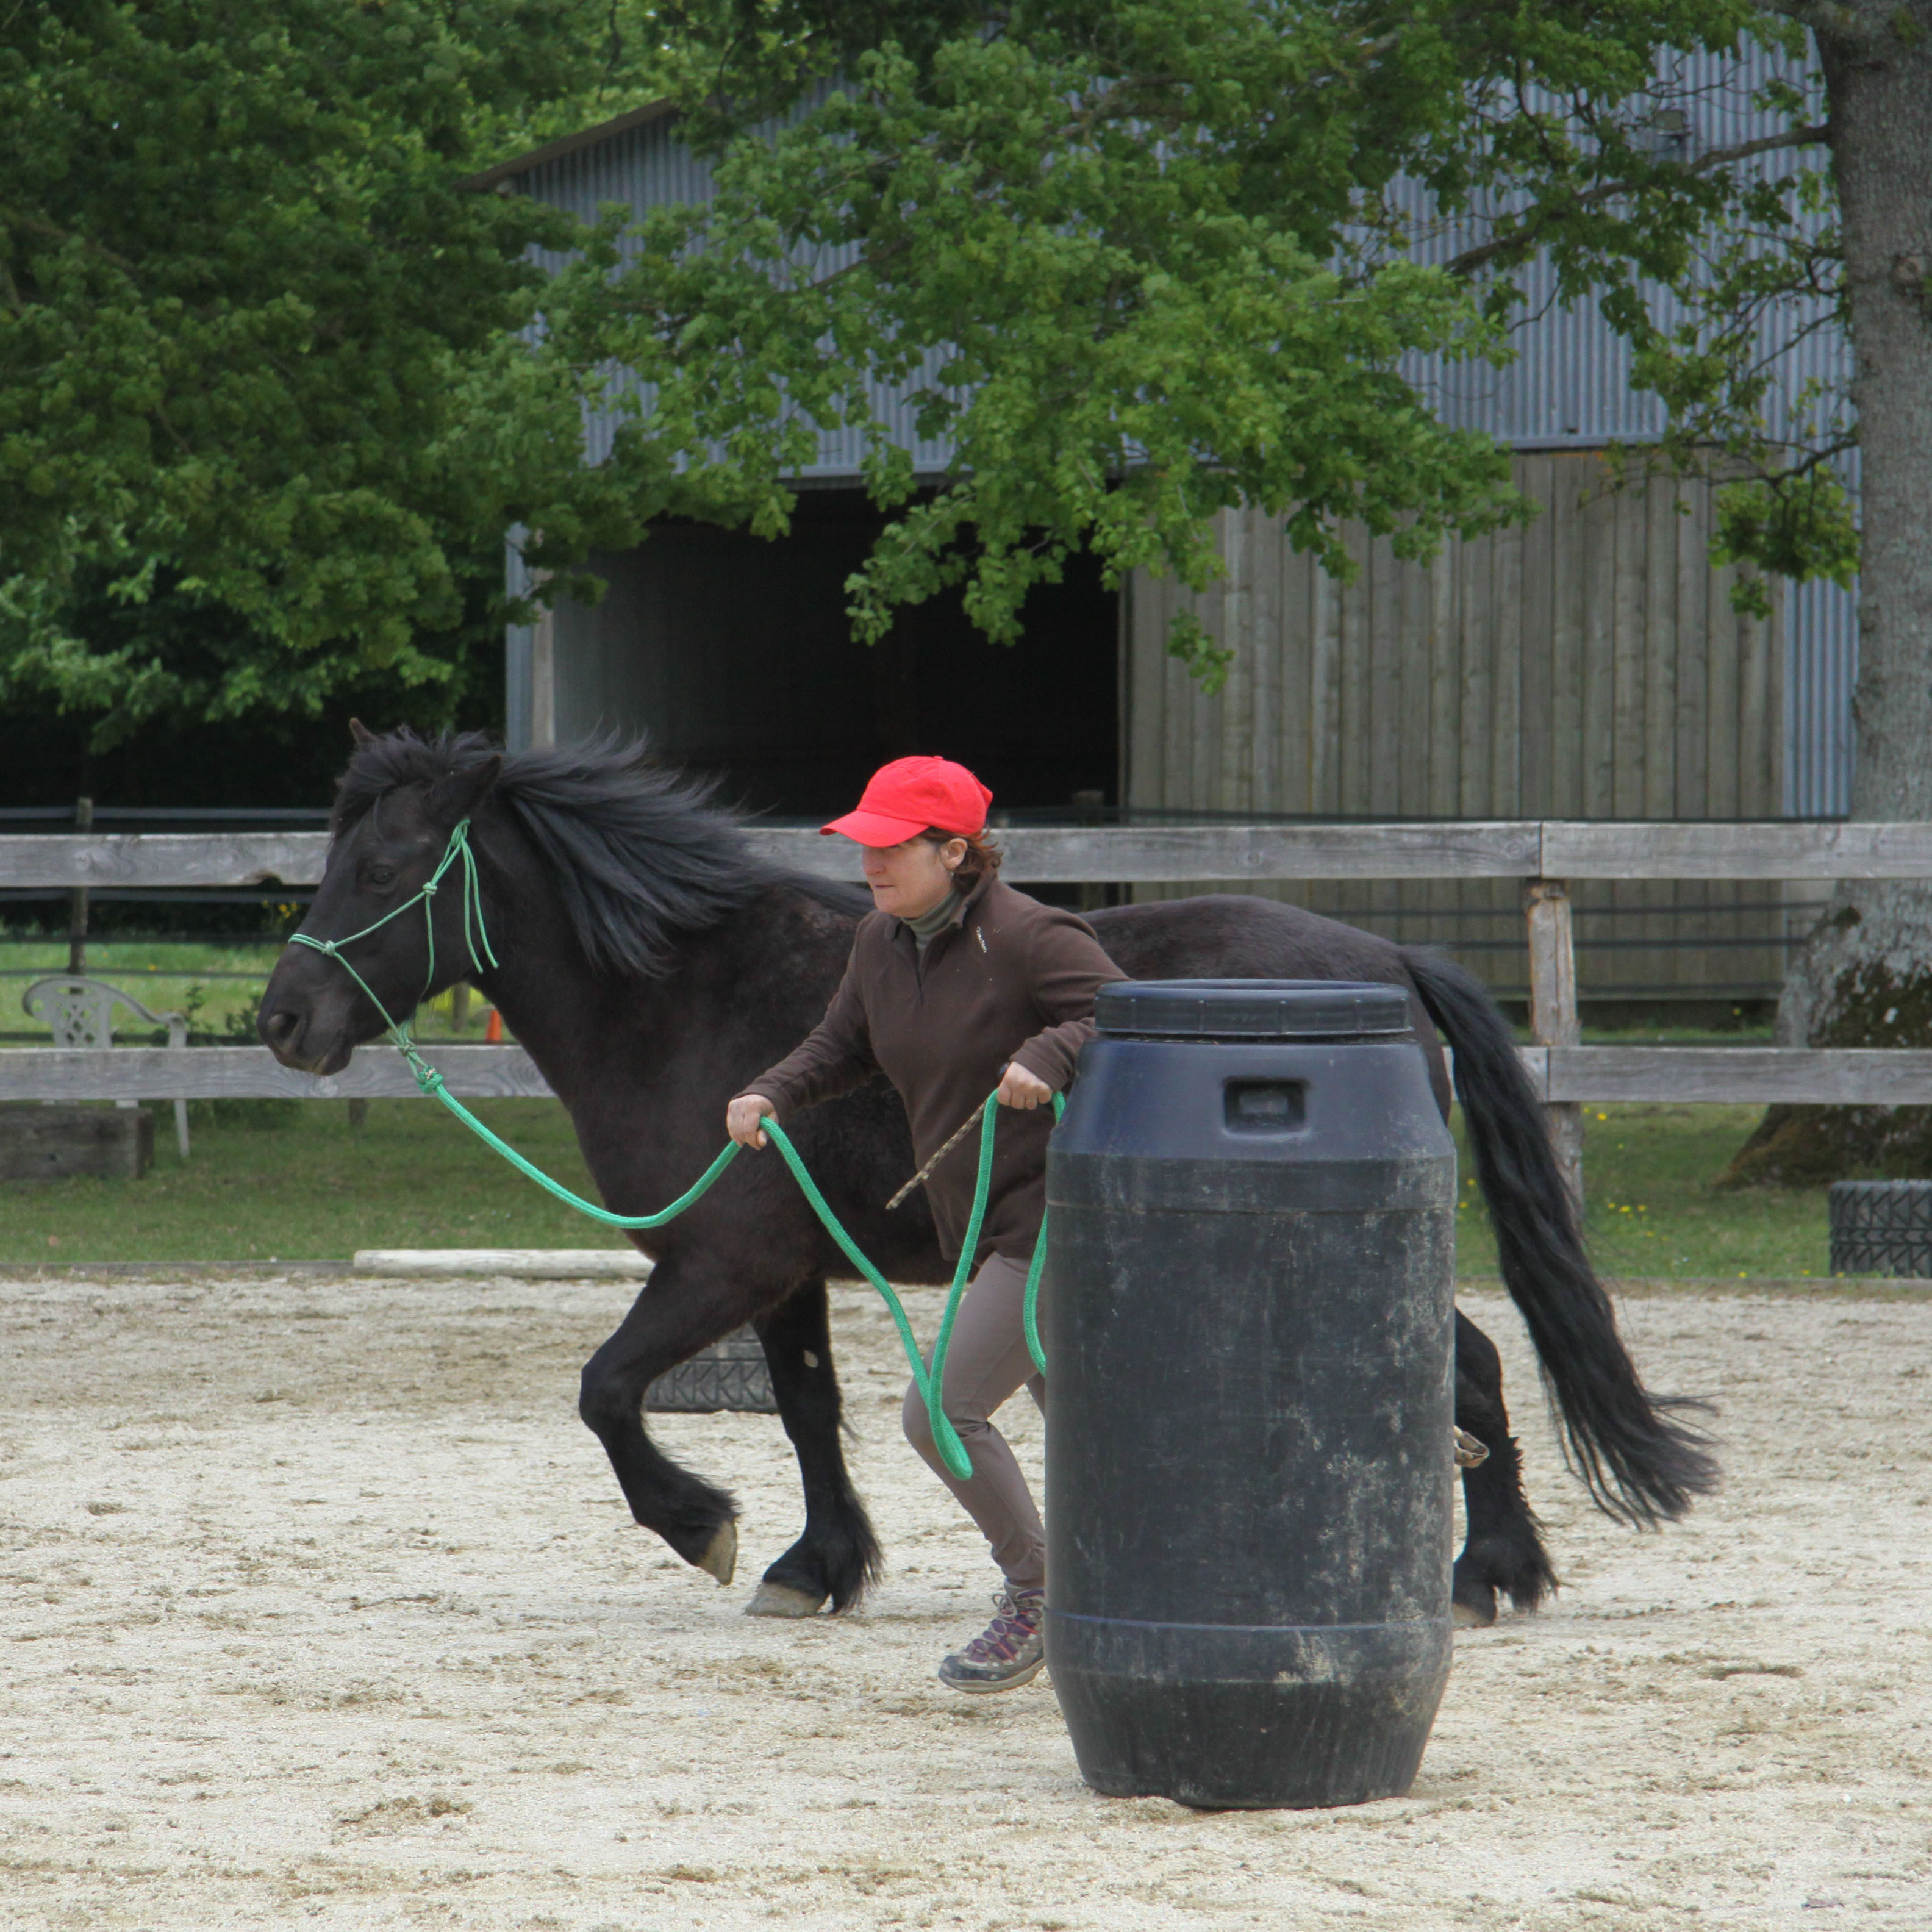 Equitation éthologique, cheval, Nantes, Rennes, centre équestre